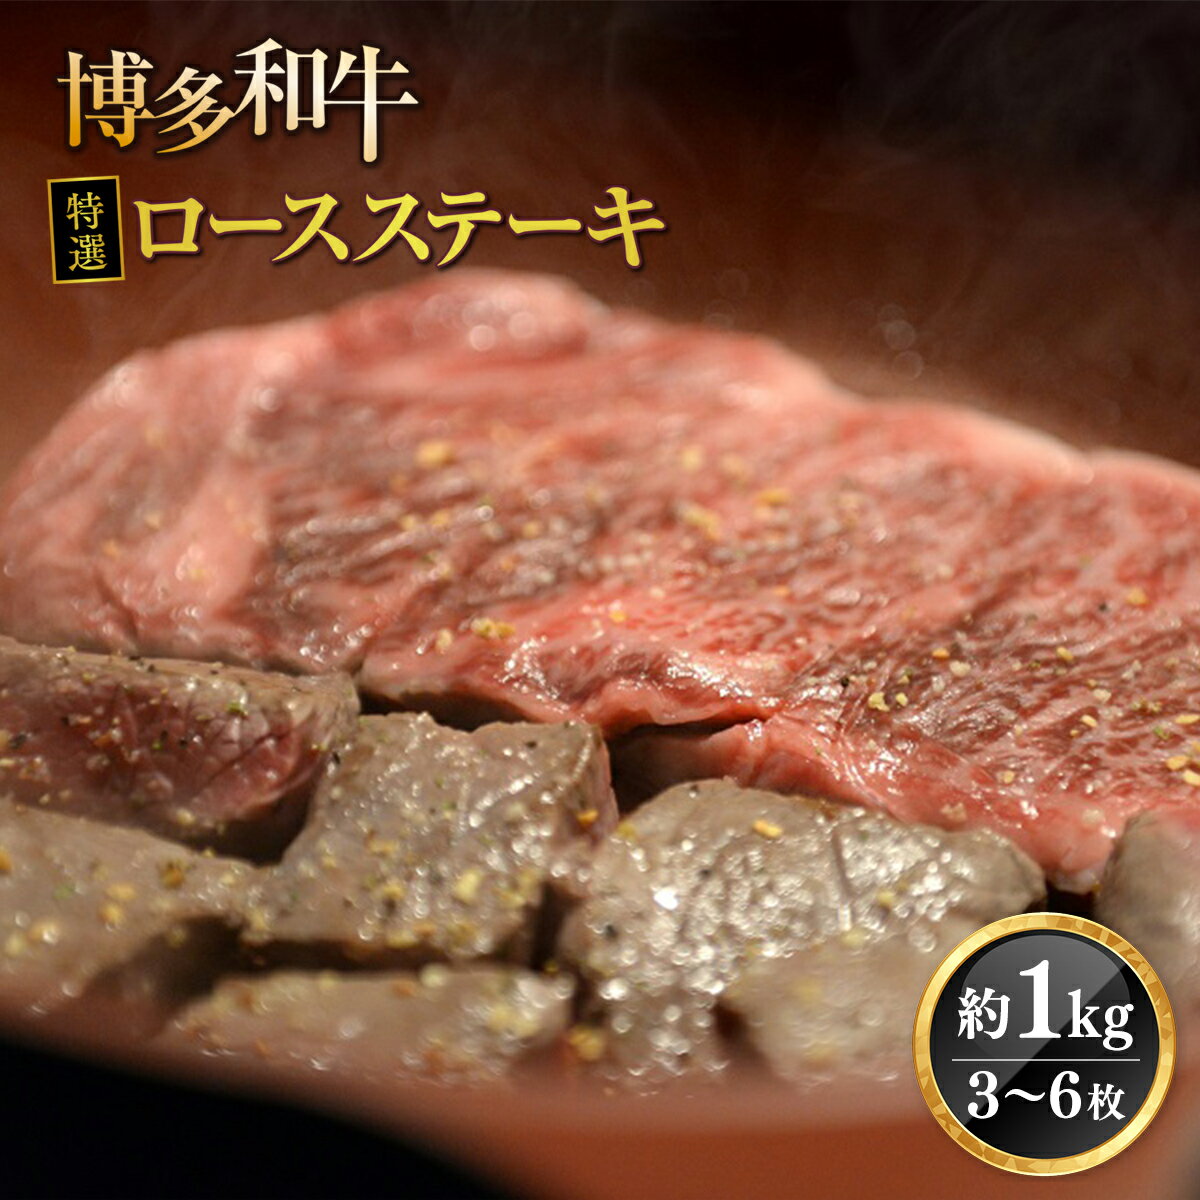 博多和牛特選ロースステーキ 約1kg 3~6枚 冷凍 送料無料 牛肉 ステーキ ロース 博多和牛 DY013